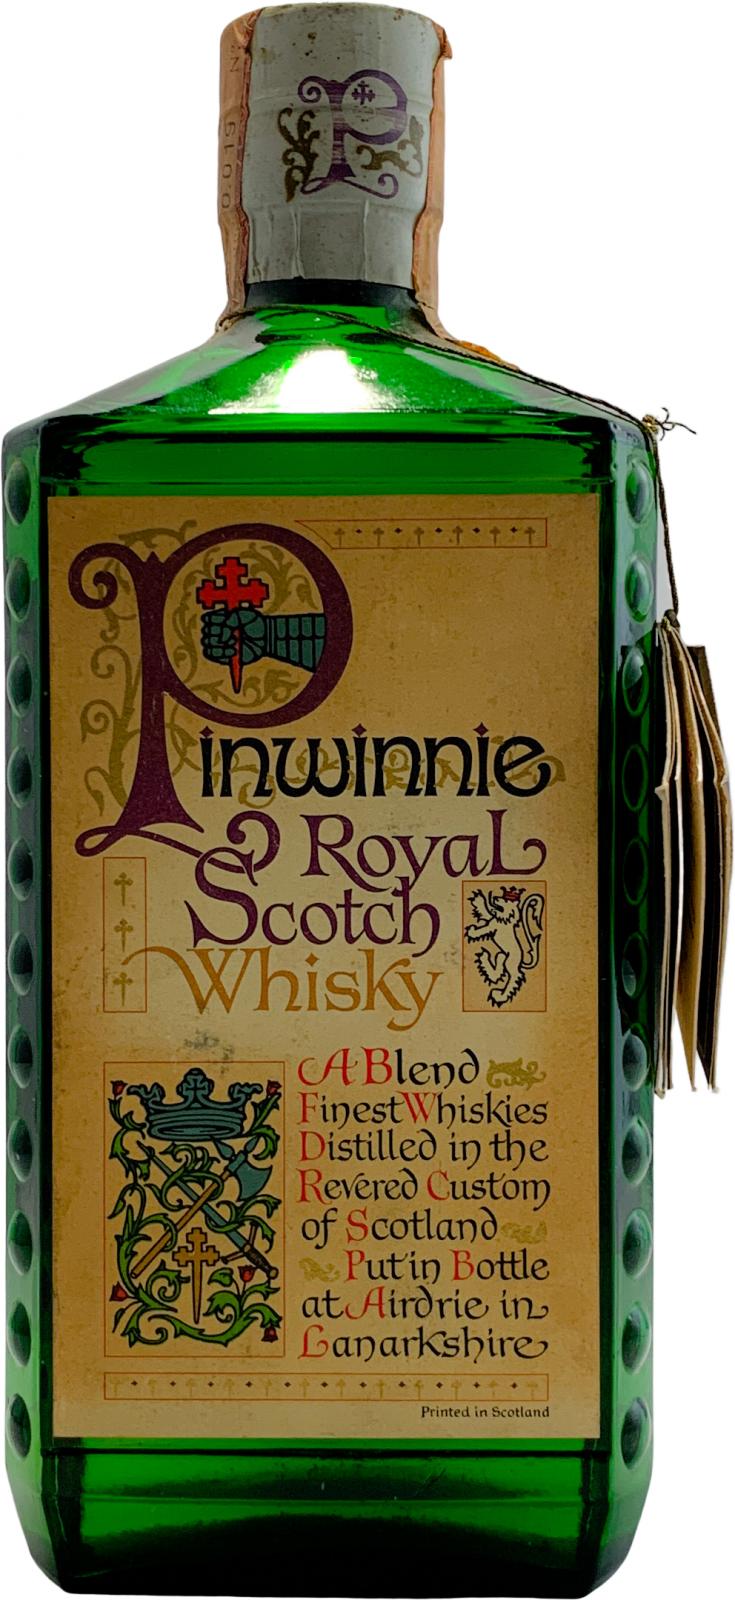 Pinwinnie Royale Scotch Whisky